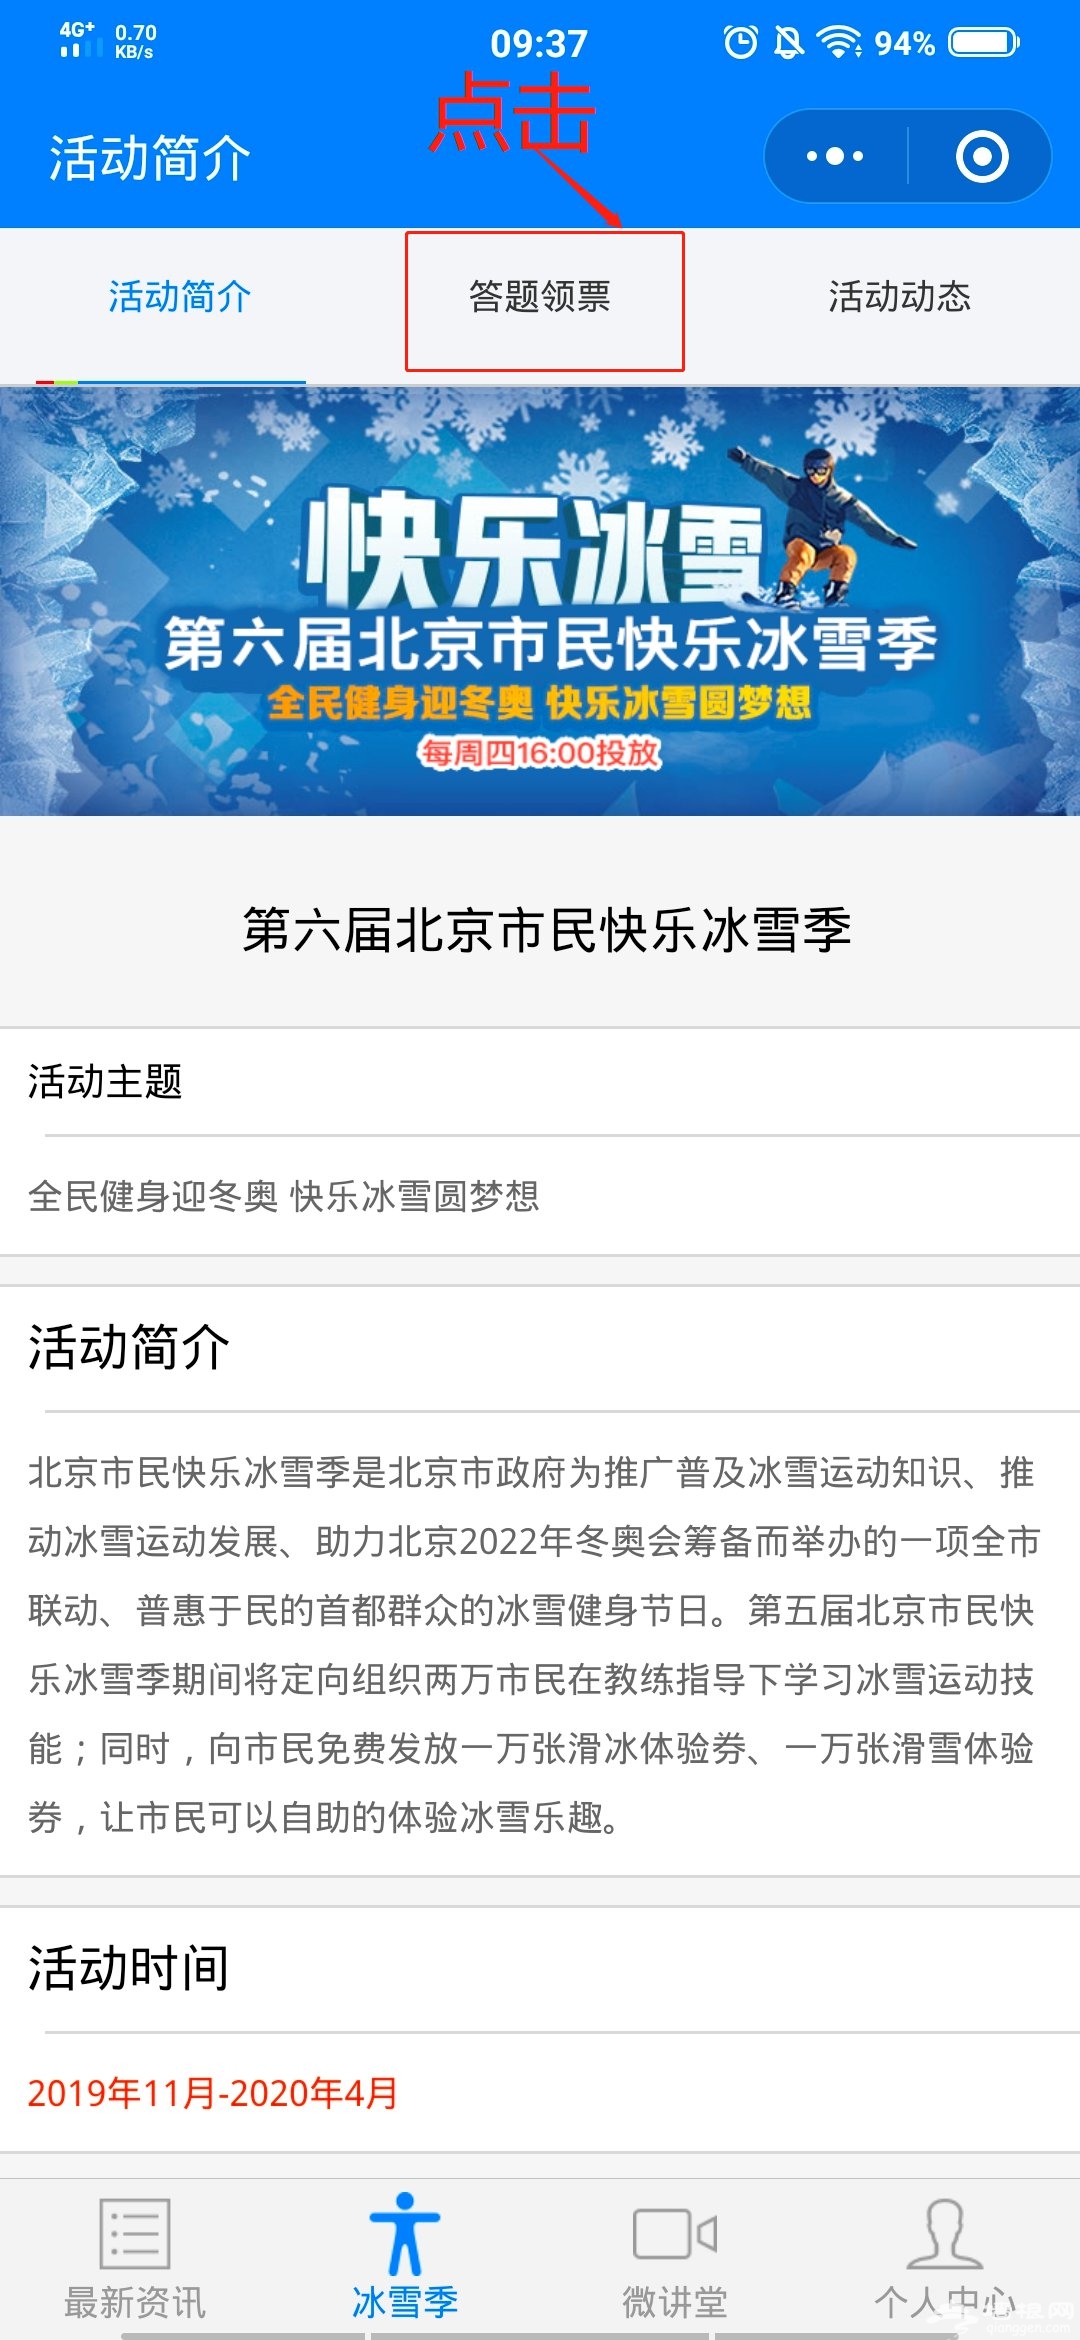 2019—2020北京市民快乐冰雪季免费体验券领取指南[墙根网]